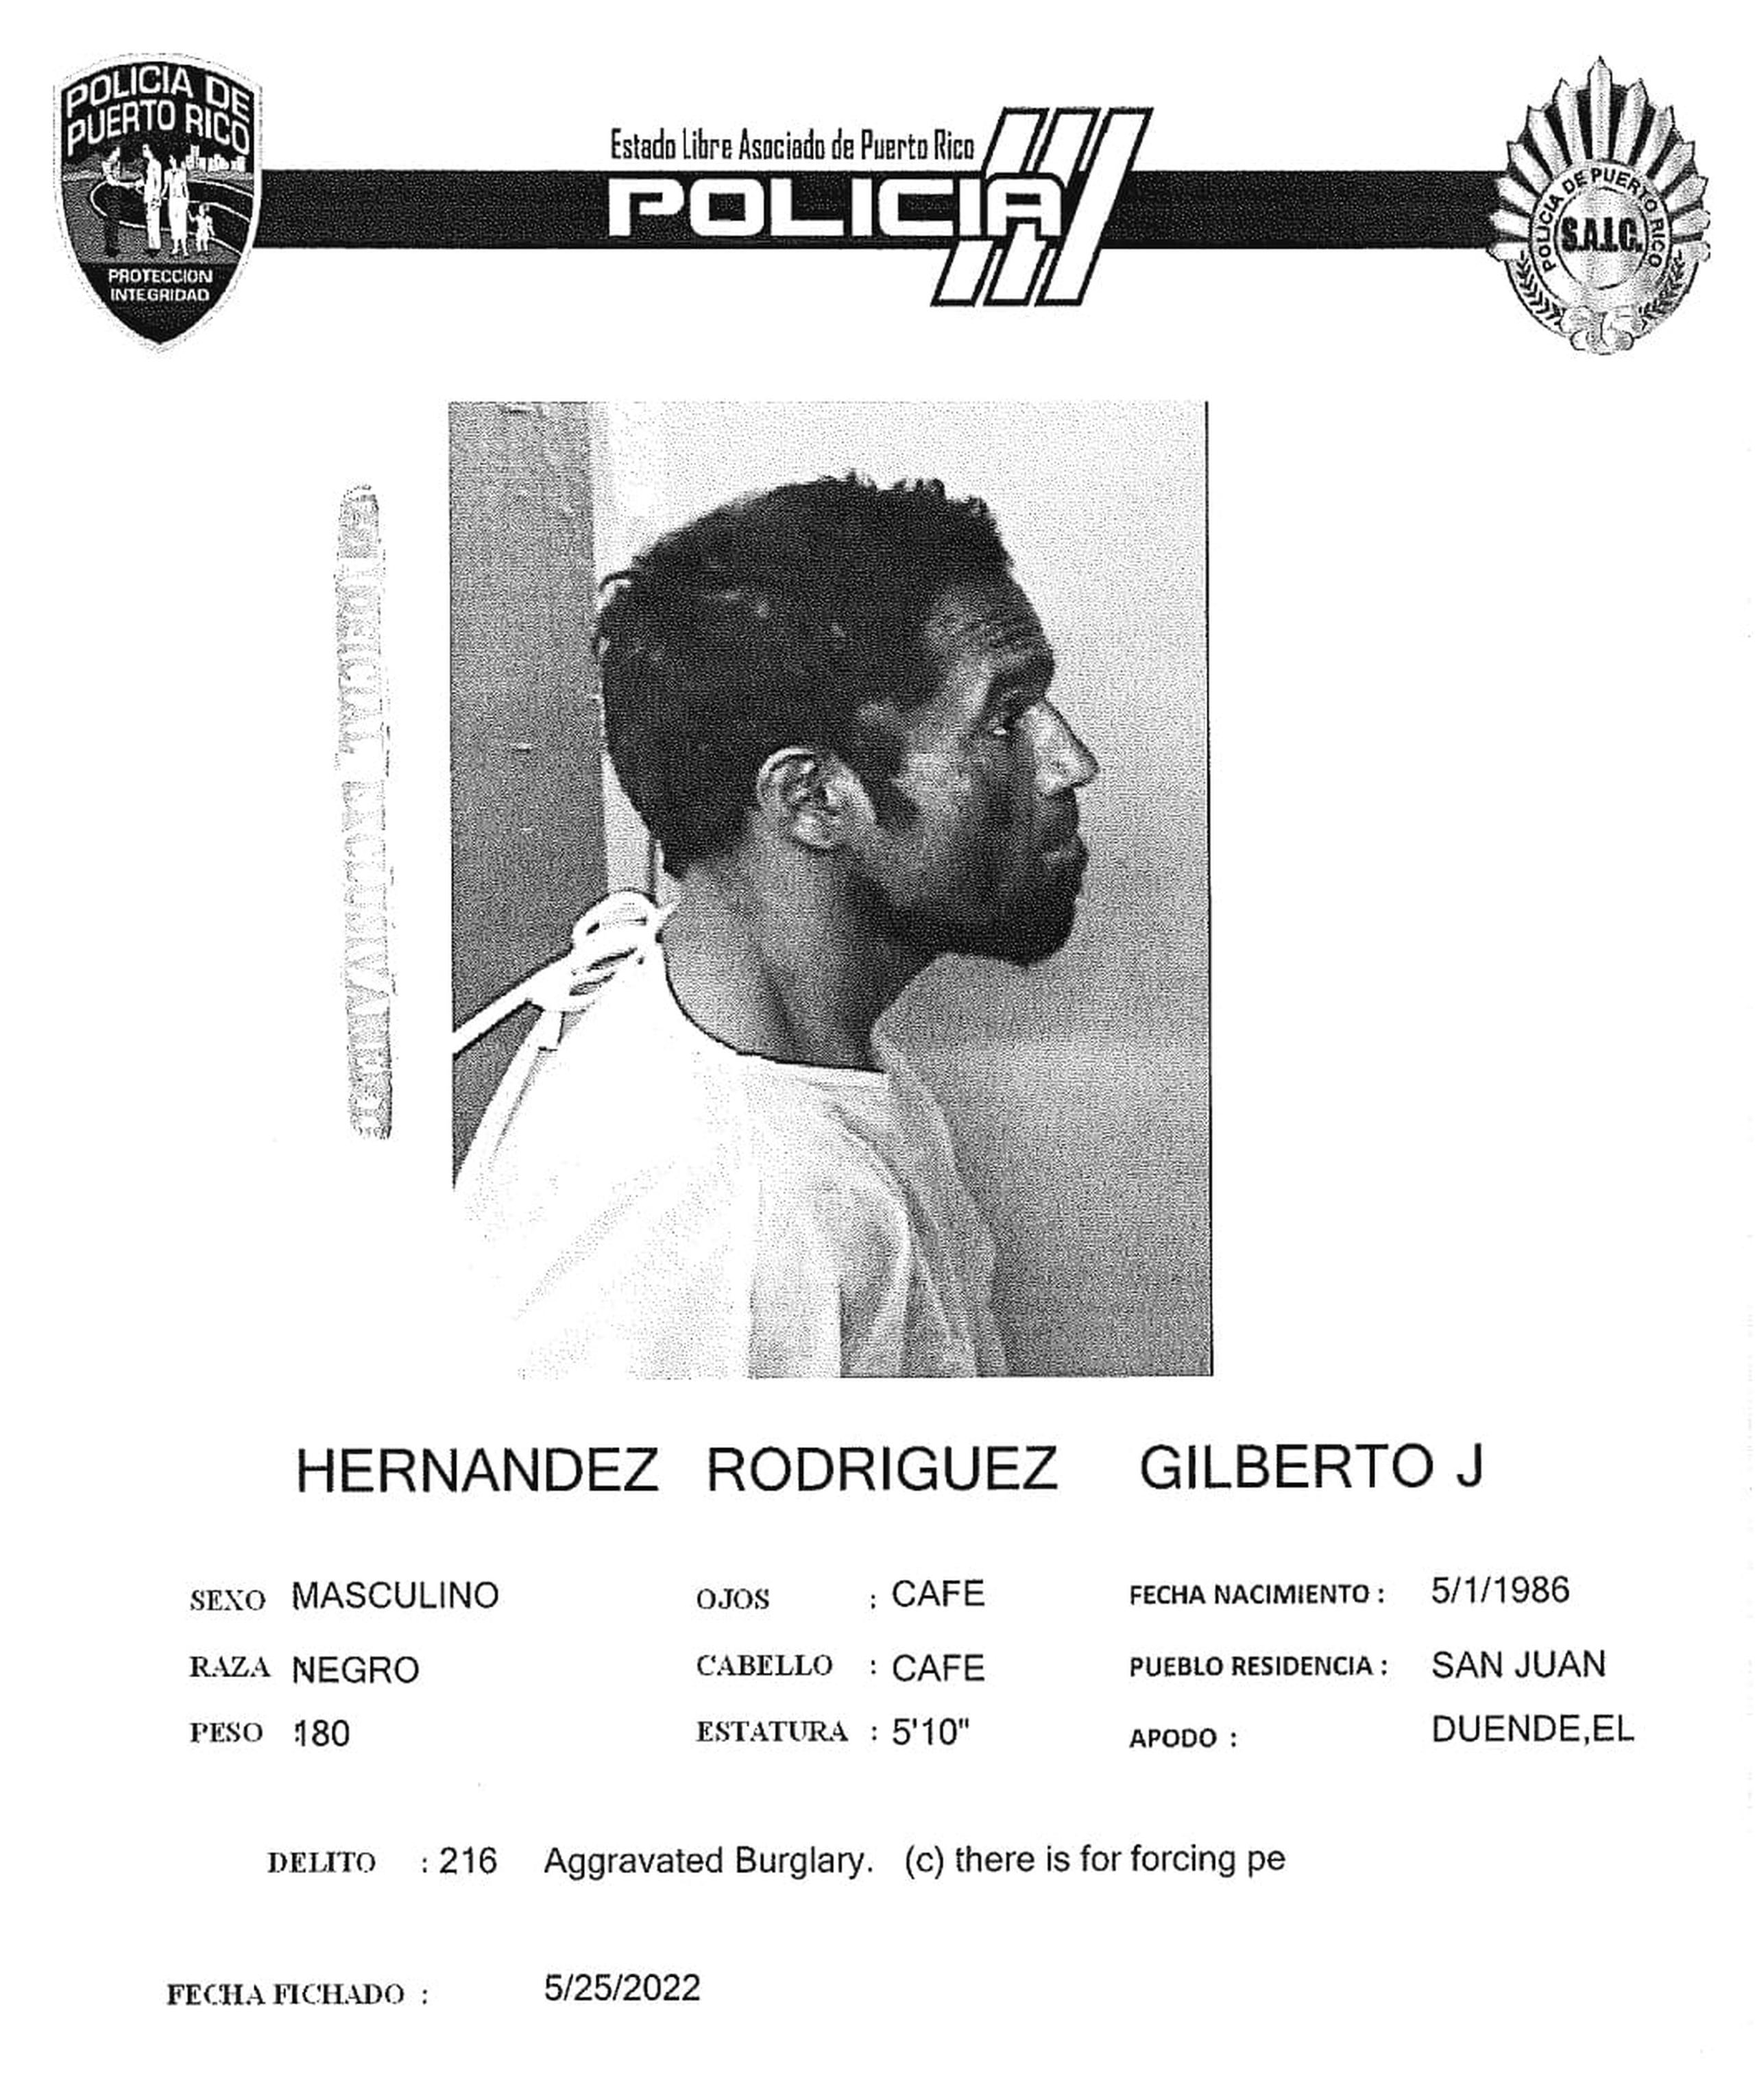 Gilberto J. Hernández Rodríguez, quien posee antecedentes penales, fue ingresado en el complejo correccional de Bayamón.